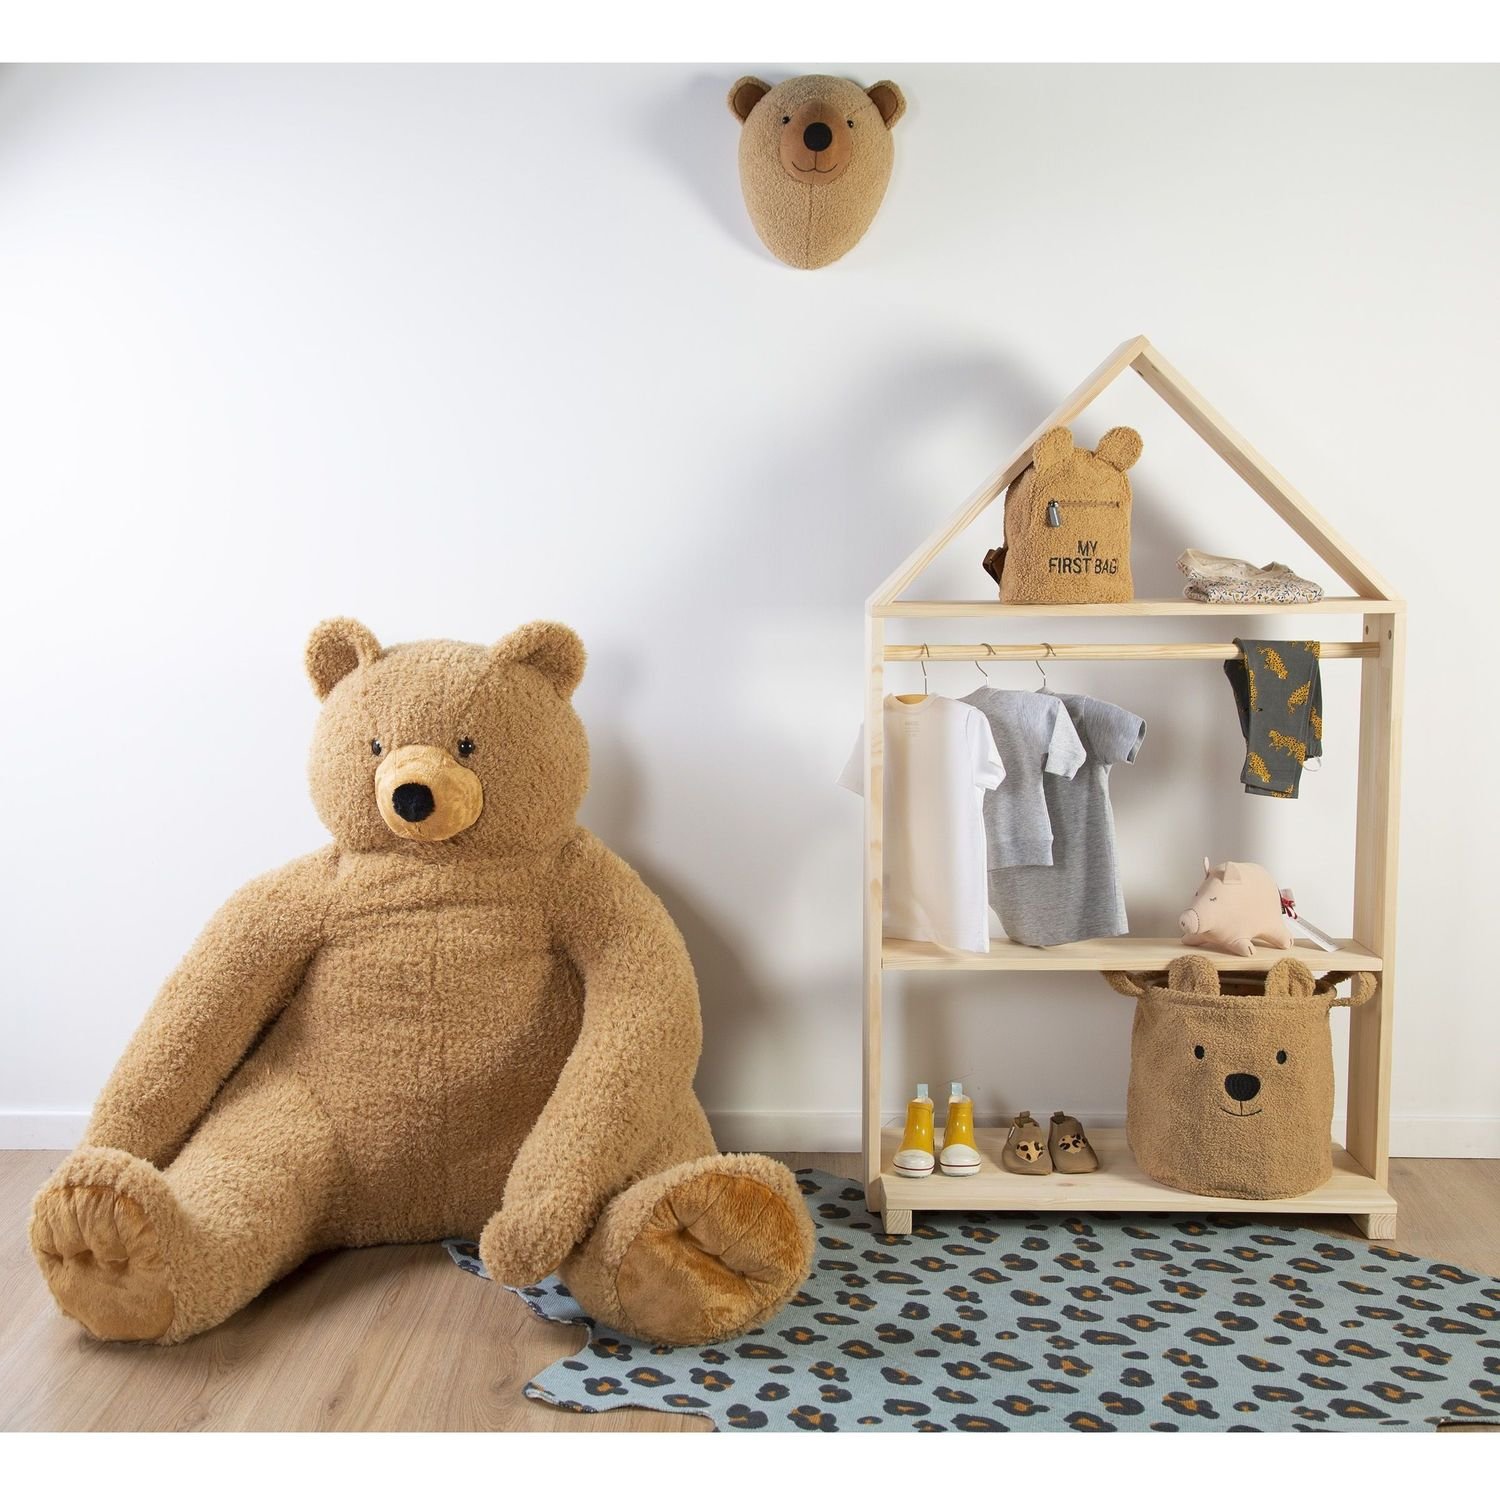 Набор корзин для игрушек Childhome Teddy, коричневый, 3 шт. (CCBTBSET) - фото 5